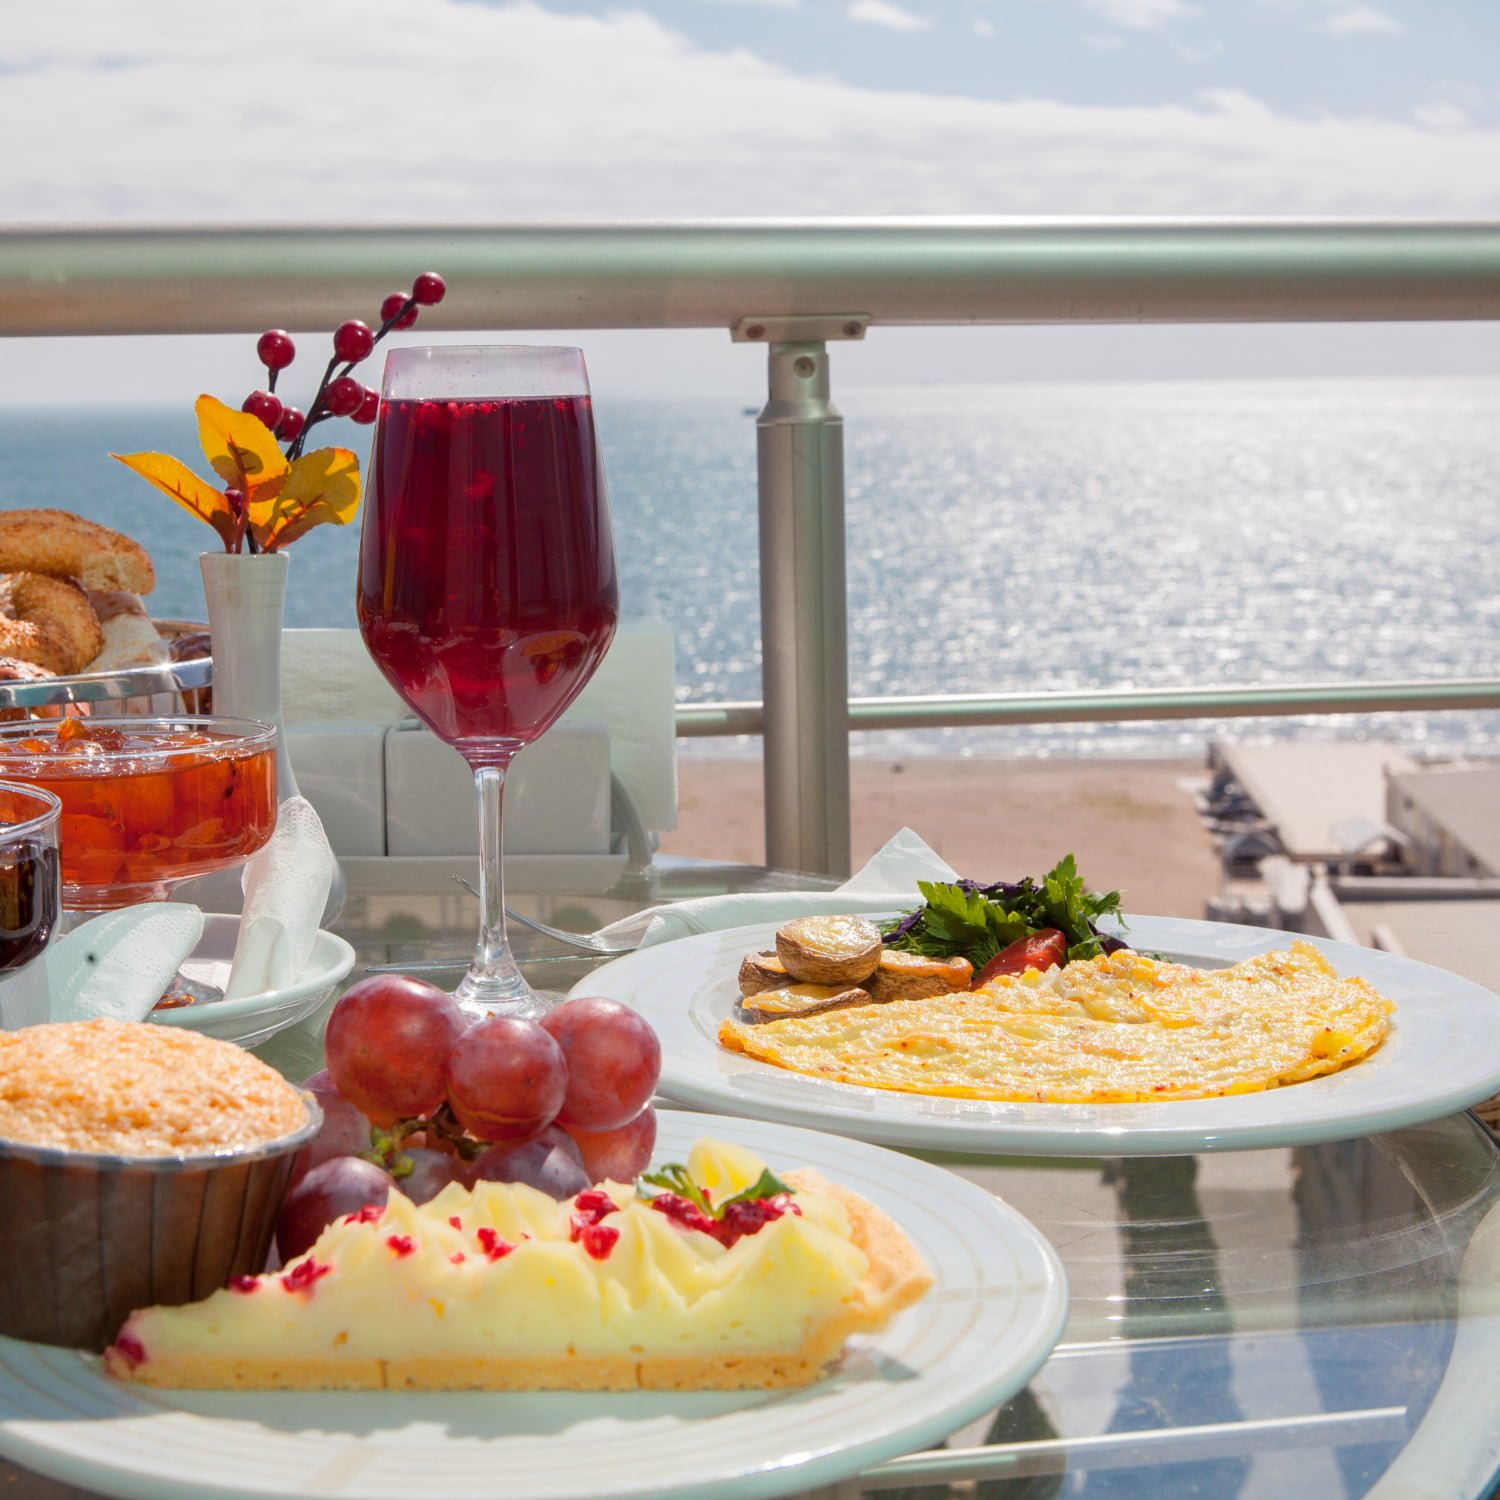 desayuno con horneado y uva y tortilla en plato blanco en el balcón junto al mar / crucero